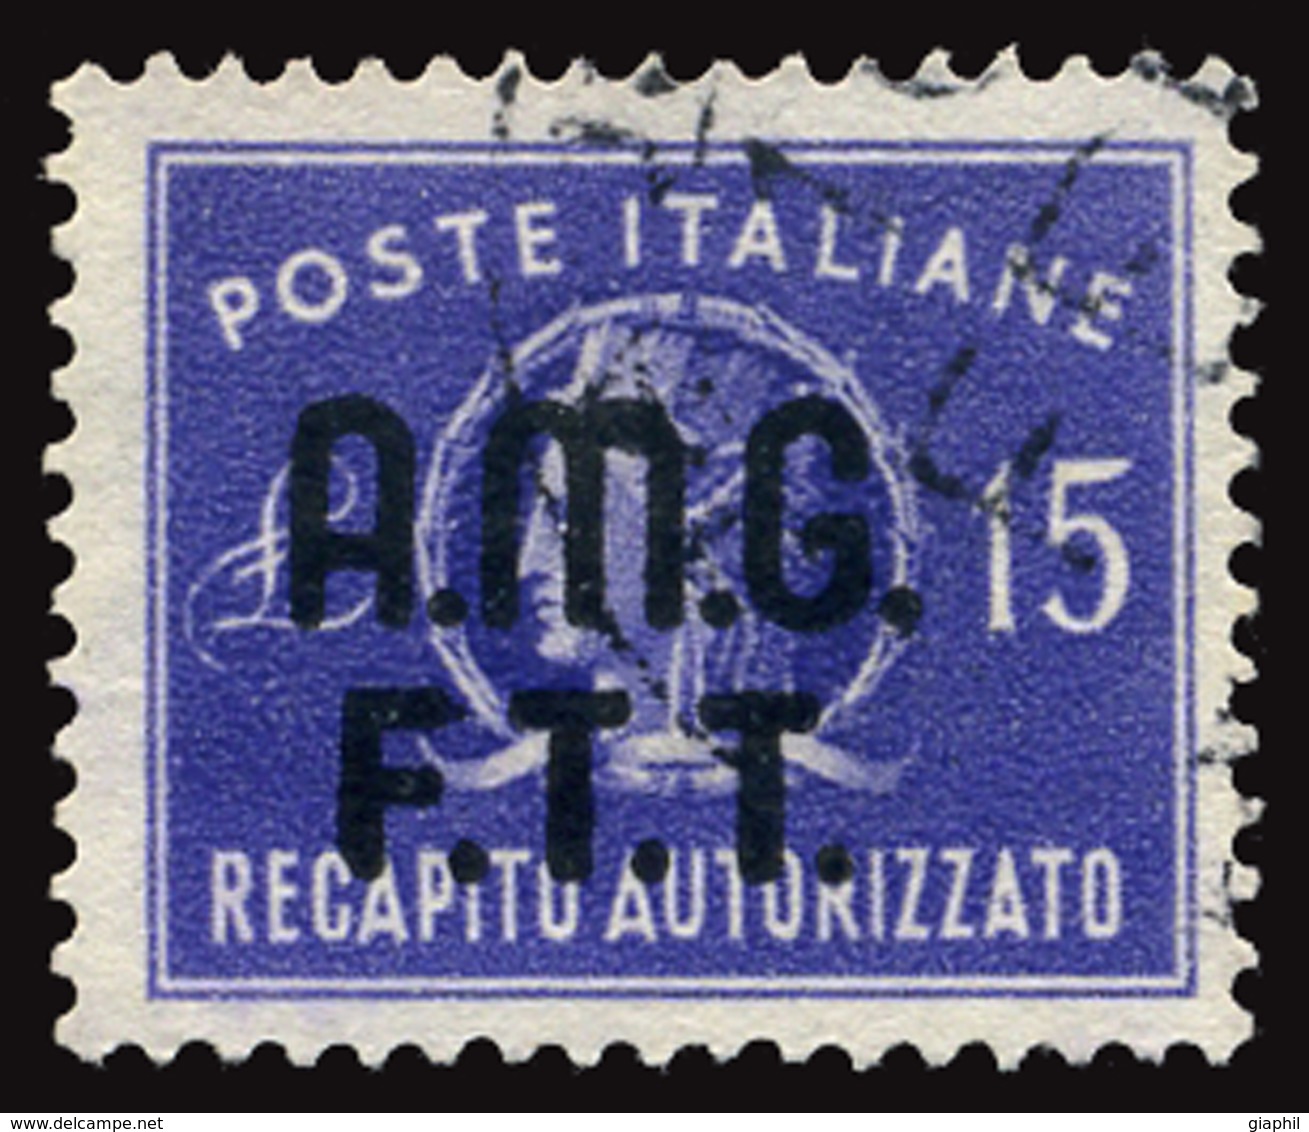 ITALY ITALIA TRIESTE A 1949 RECAPITO AUTORIZZATO 15 L. (Sass. 3) USATO OFFERTA! - Gebraucht